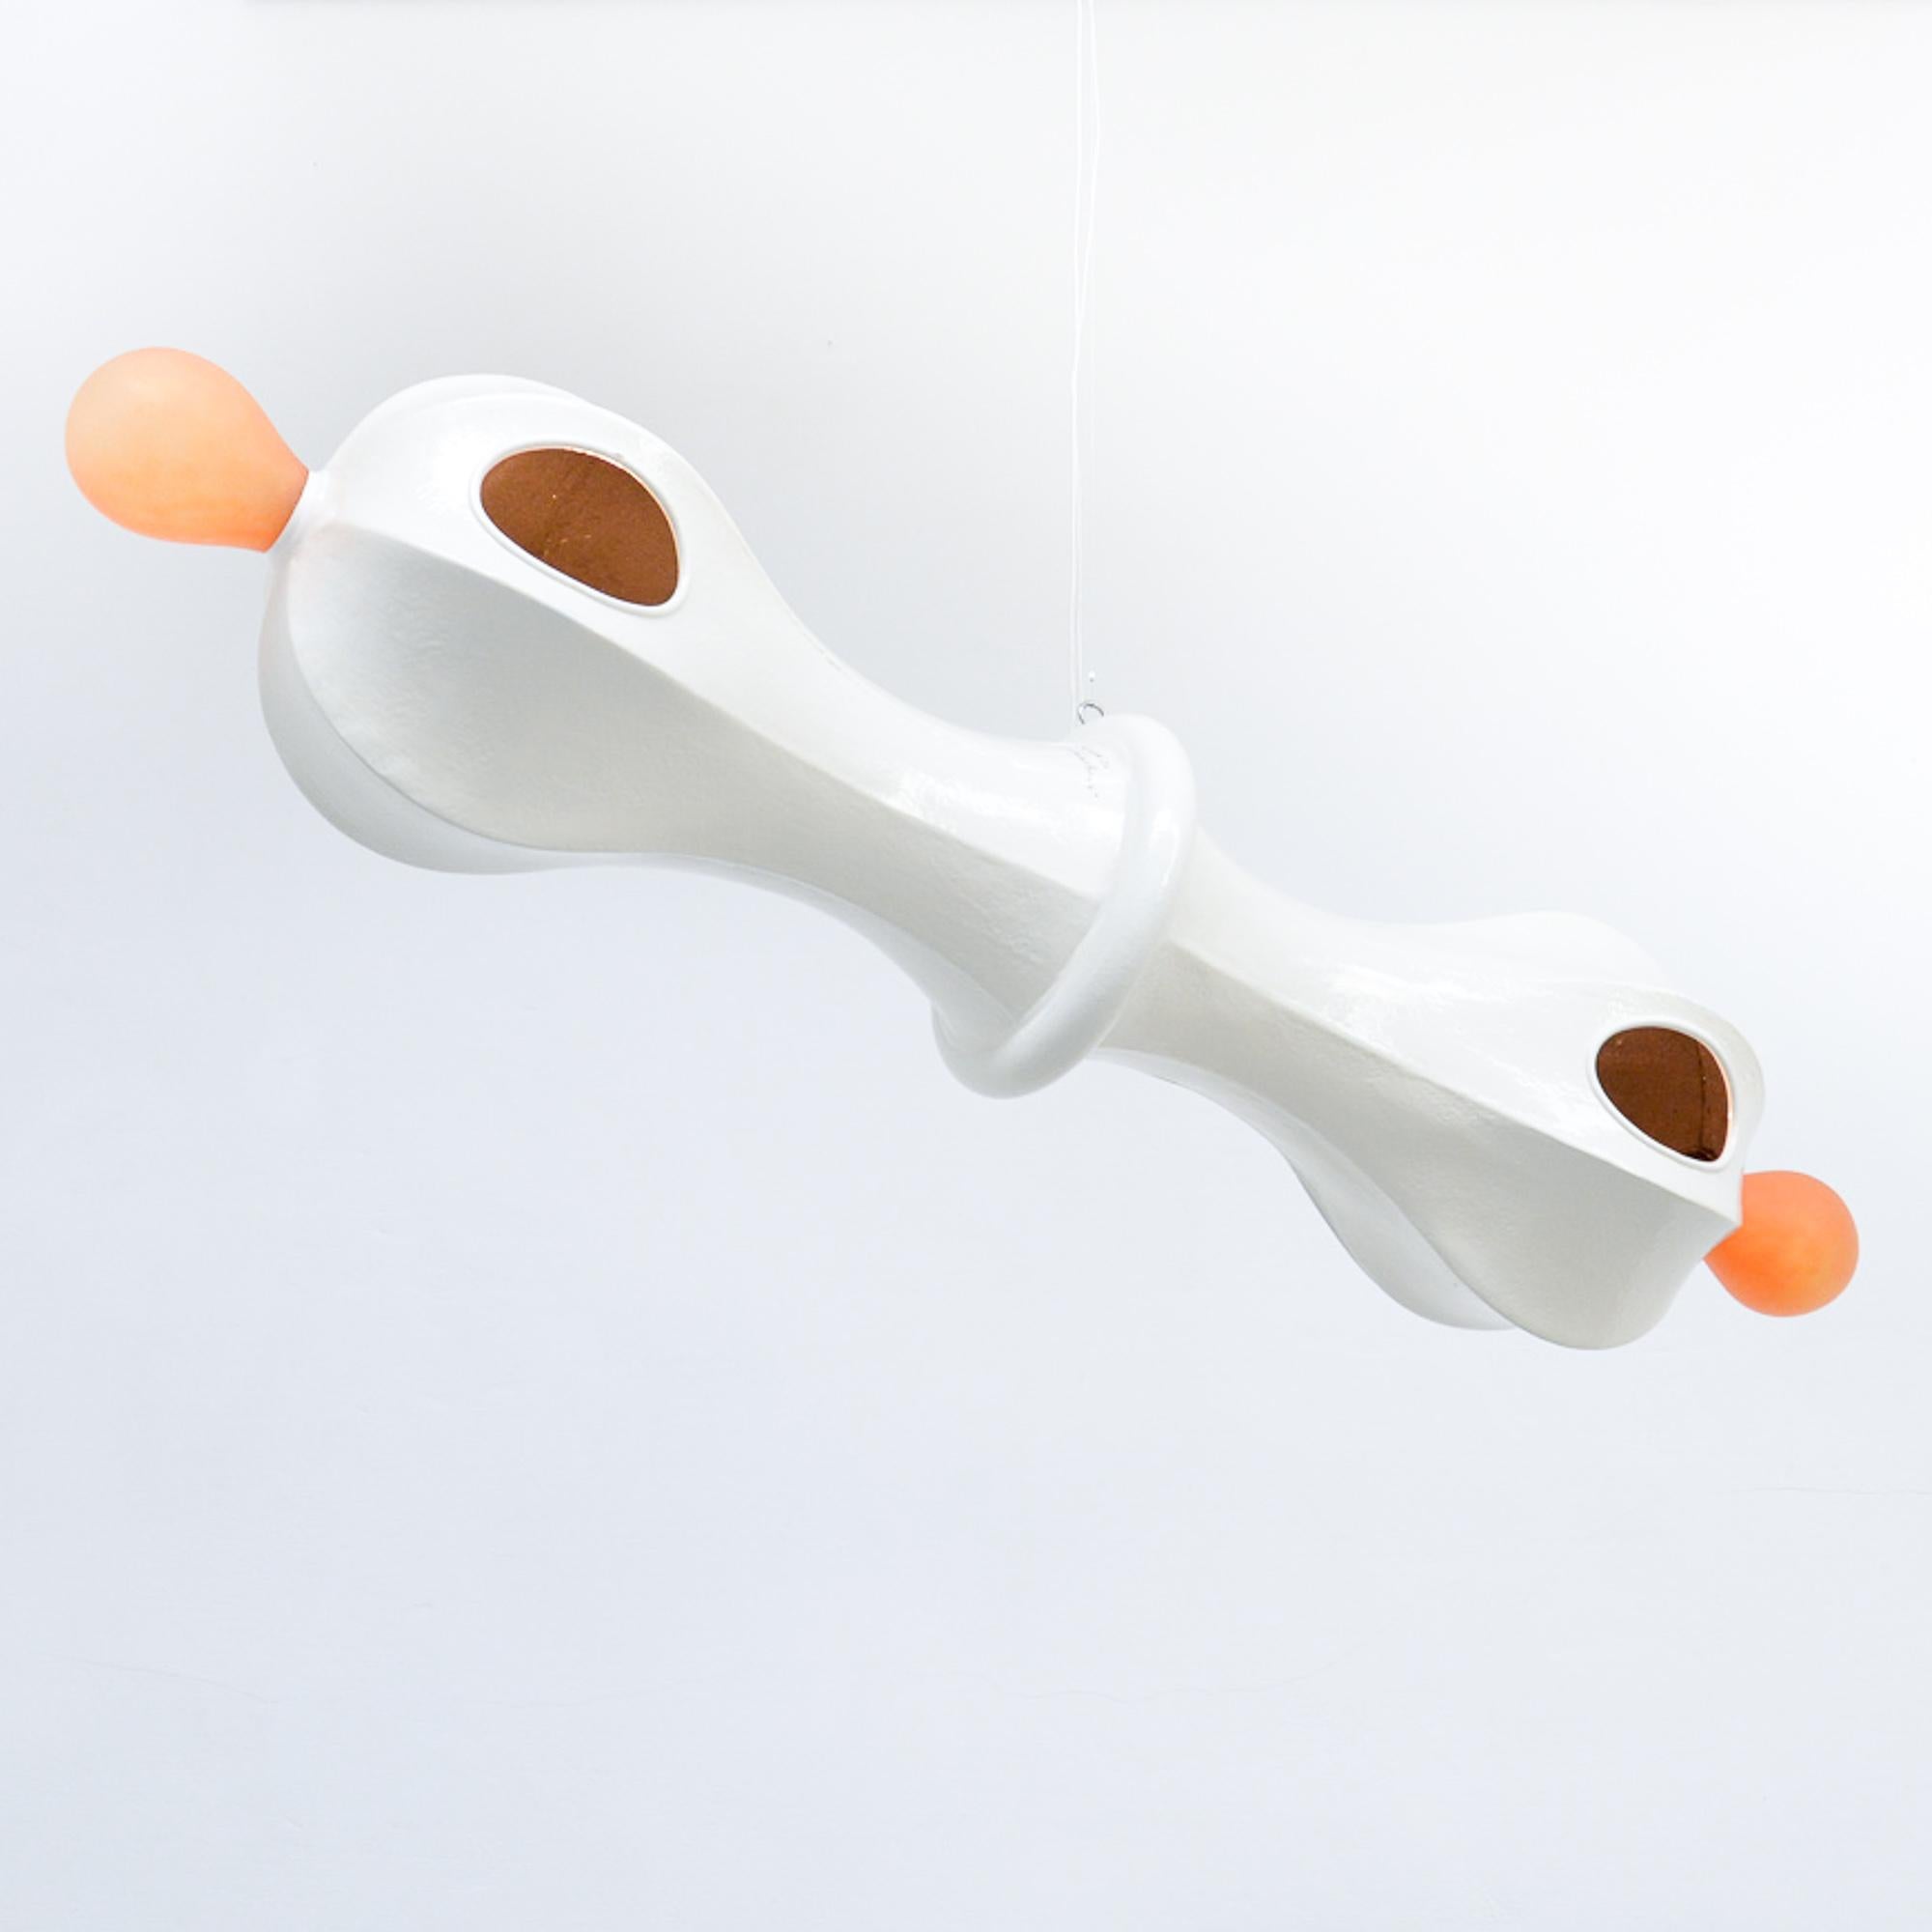 Diese Hängelampe besteht aus einem Metallrahmen, der mit Polyester überzogen und mit mundgeblasenem orangefarbenem Glas veredelt ist.
Die Lampe ist in sehr gutem Zustand. Es handelt sich um ein Unikat, das vom Künstler signiert ist.

Hans Weyers